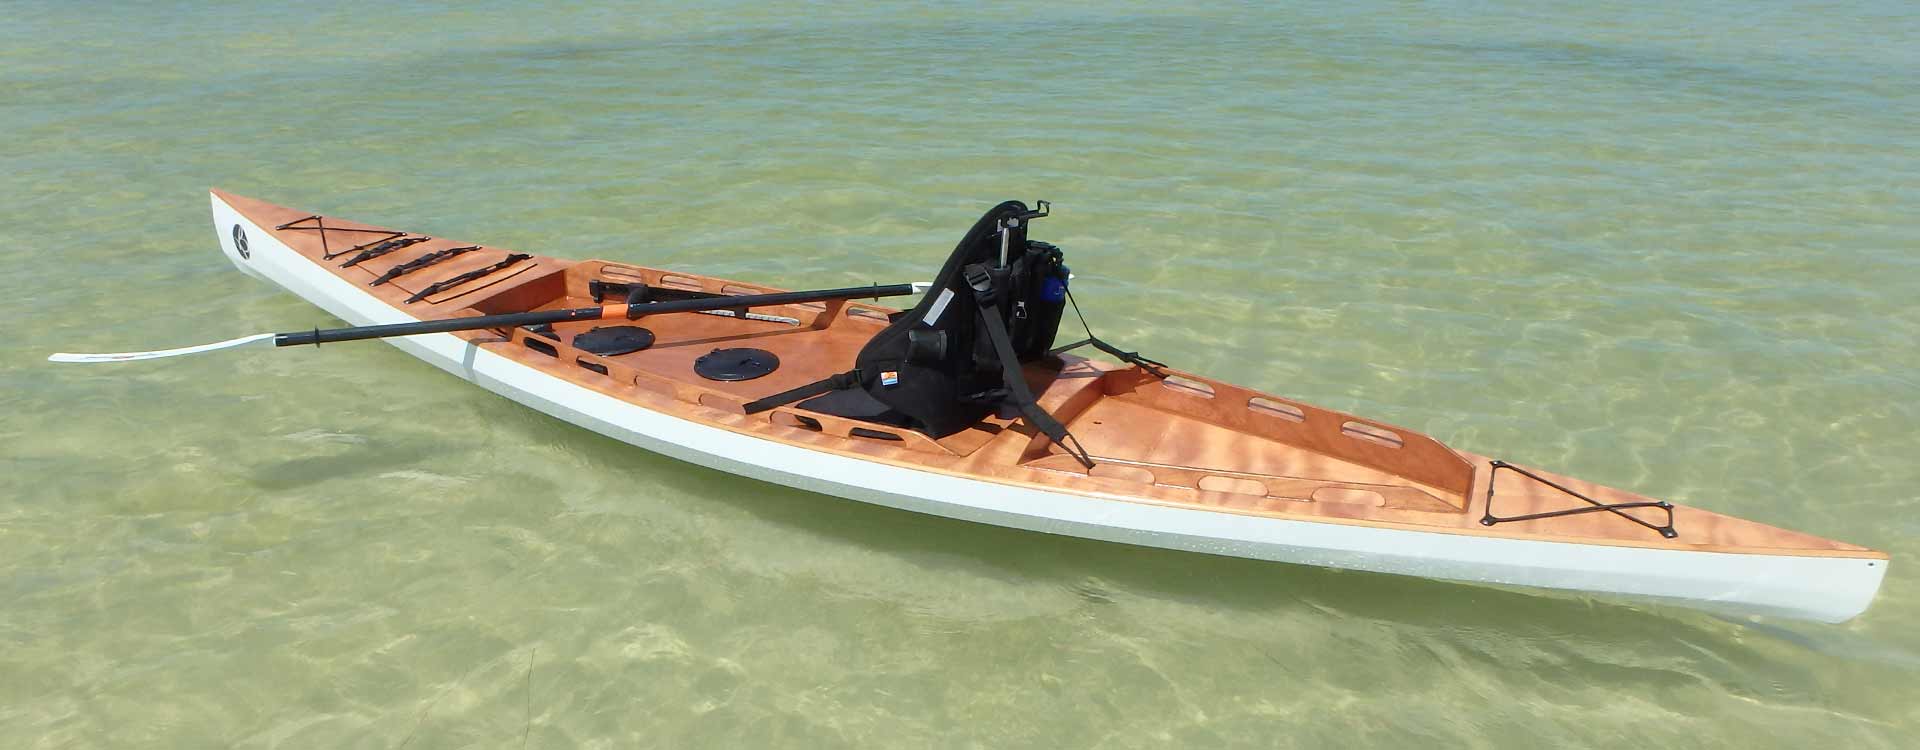 F1430 Sit On Top kayak | Bedard Yacht Design